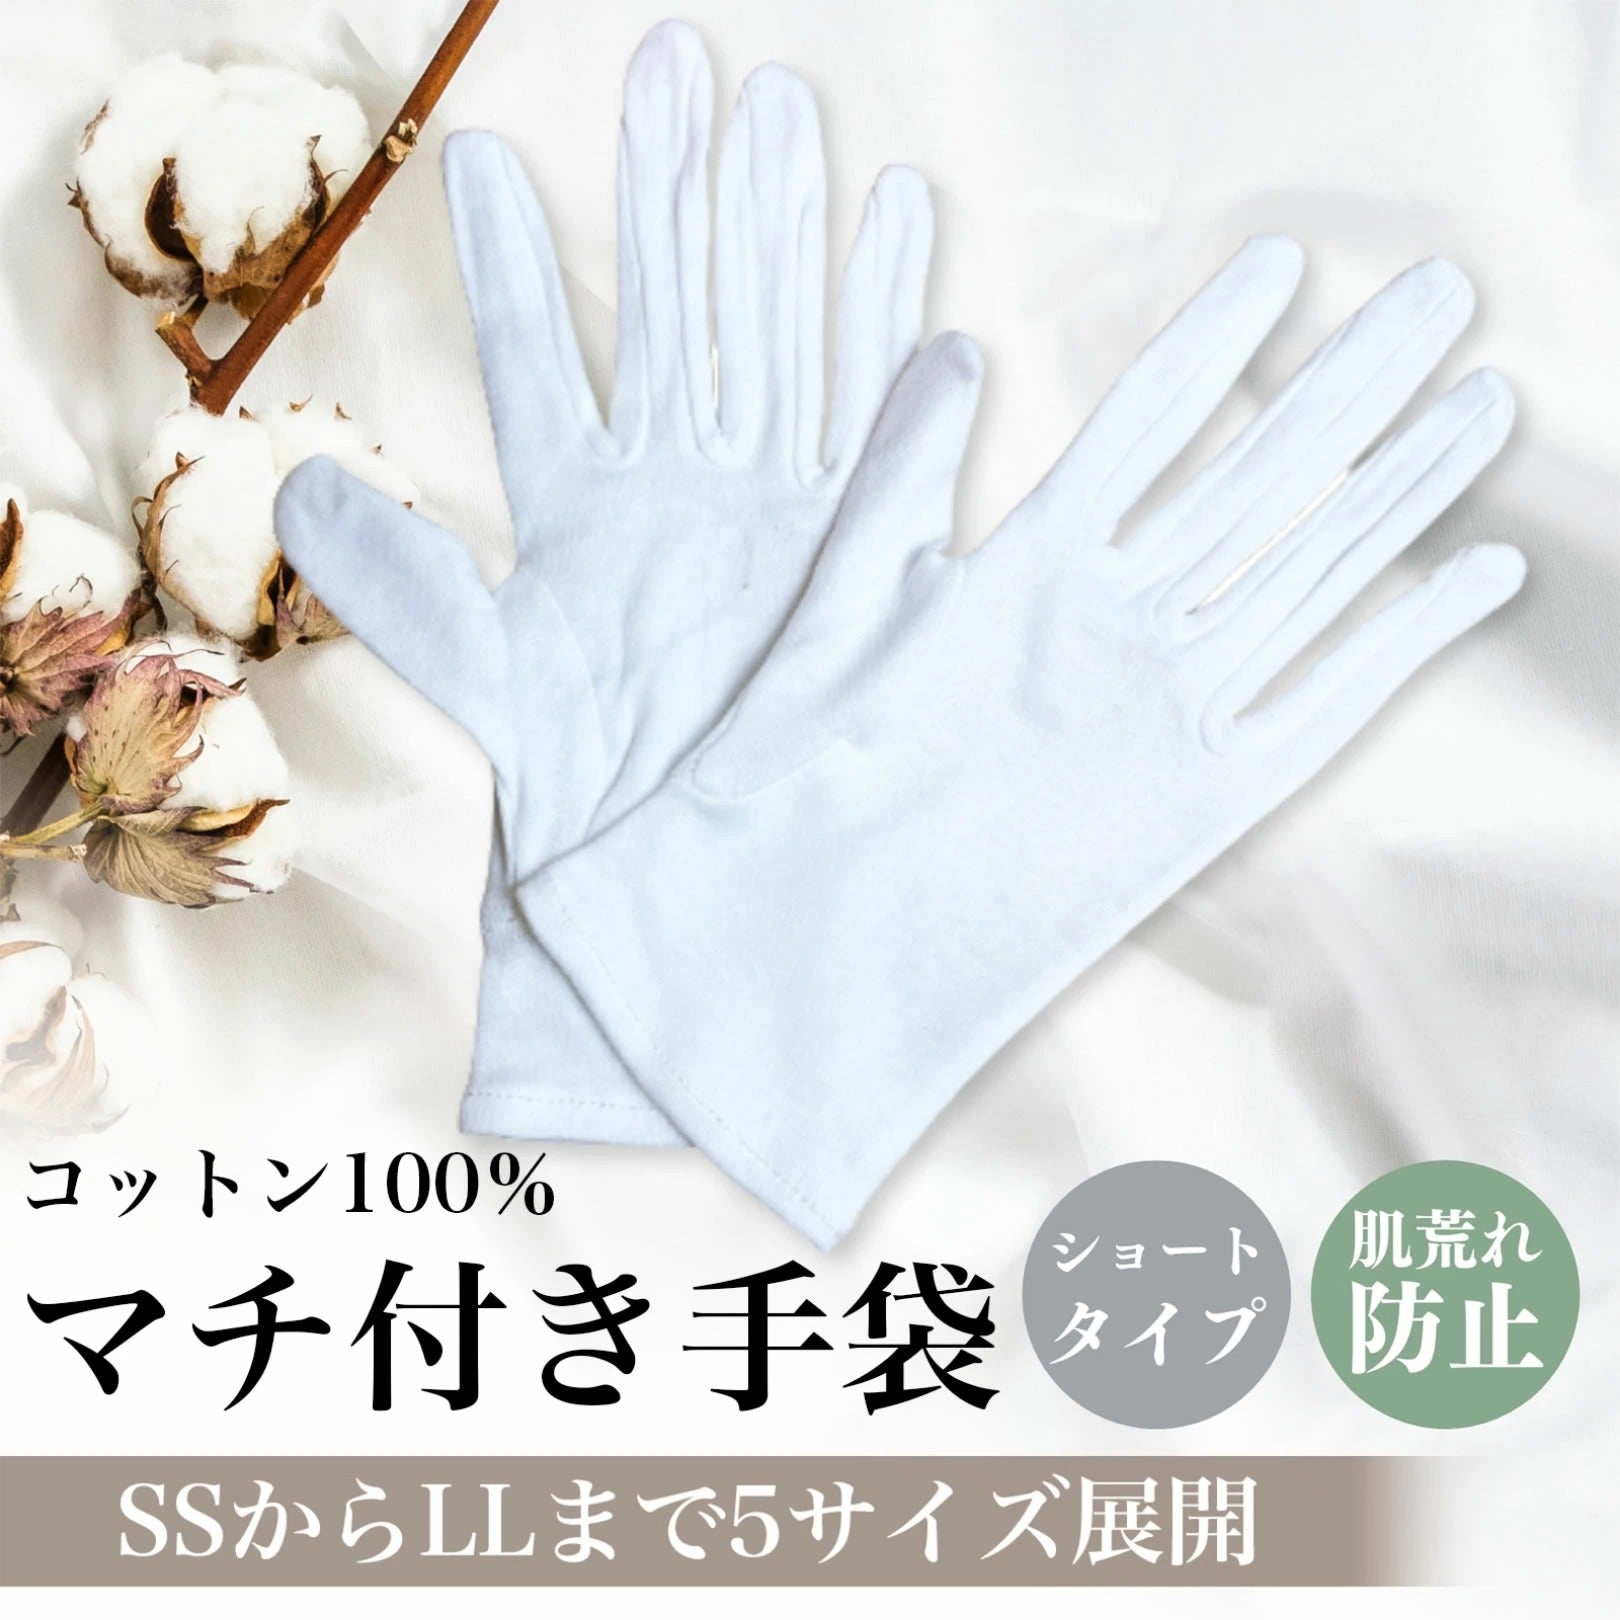 綿手袋 コットン手袋 おやすみ手袋 作業 検品 品質管理 掃除 運転 表彰 手荒れ対策 白黒選択可 HOP-COTGL05S